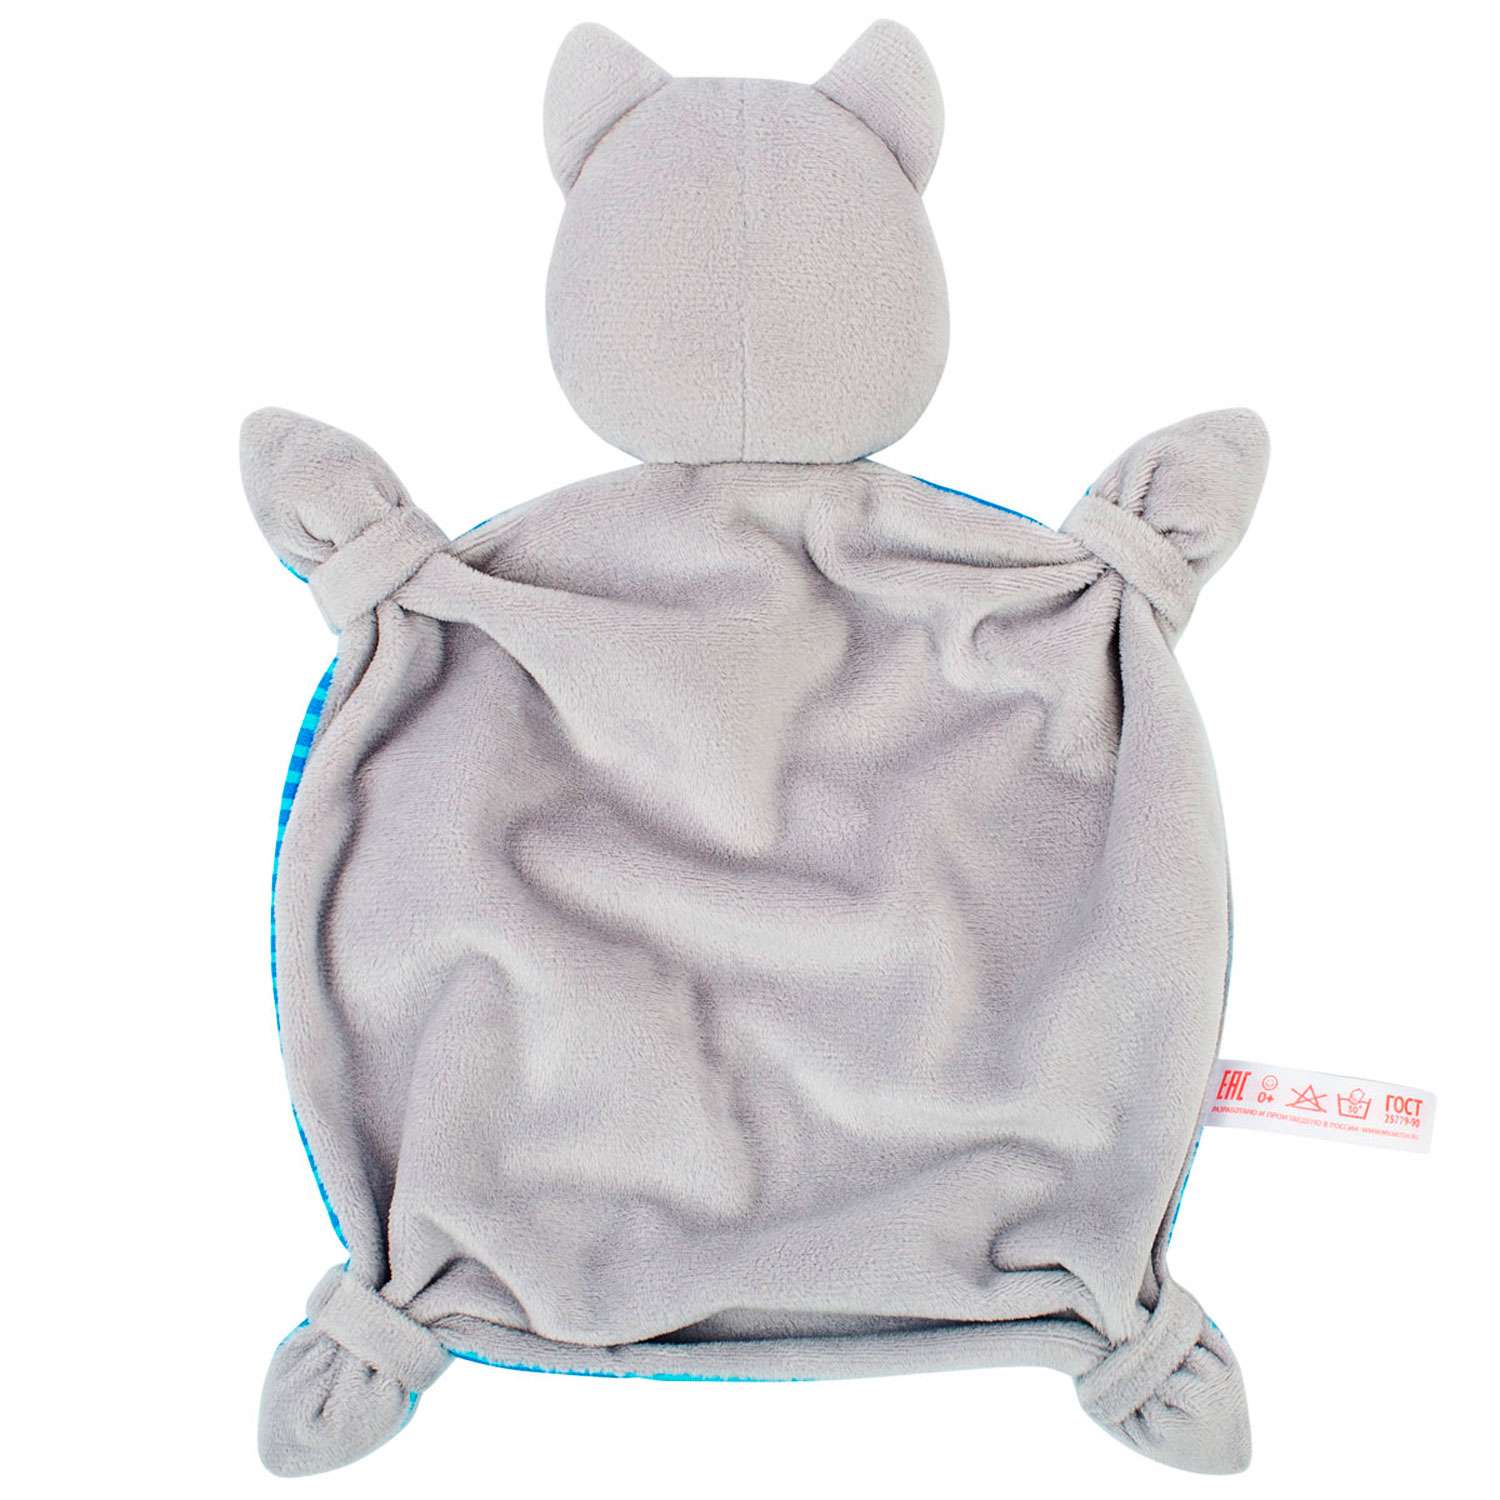 Игрушка комфортер Мякиши мягкая игрушка Котёнок Кекс для сна новорождённых обнимашка подарок - фото 11